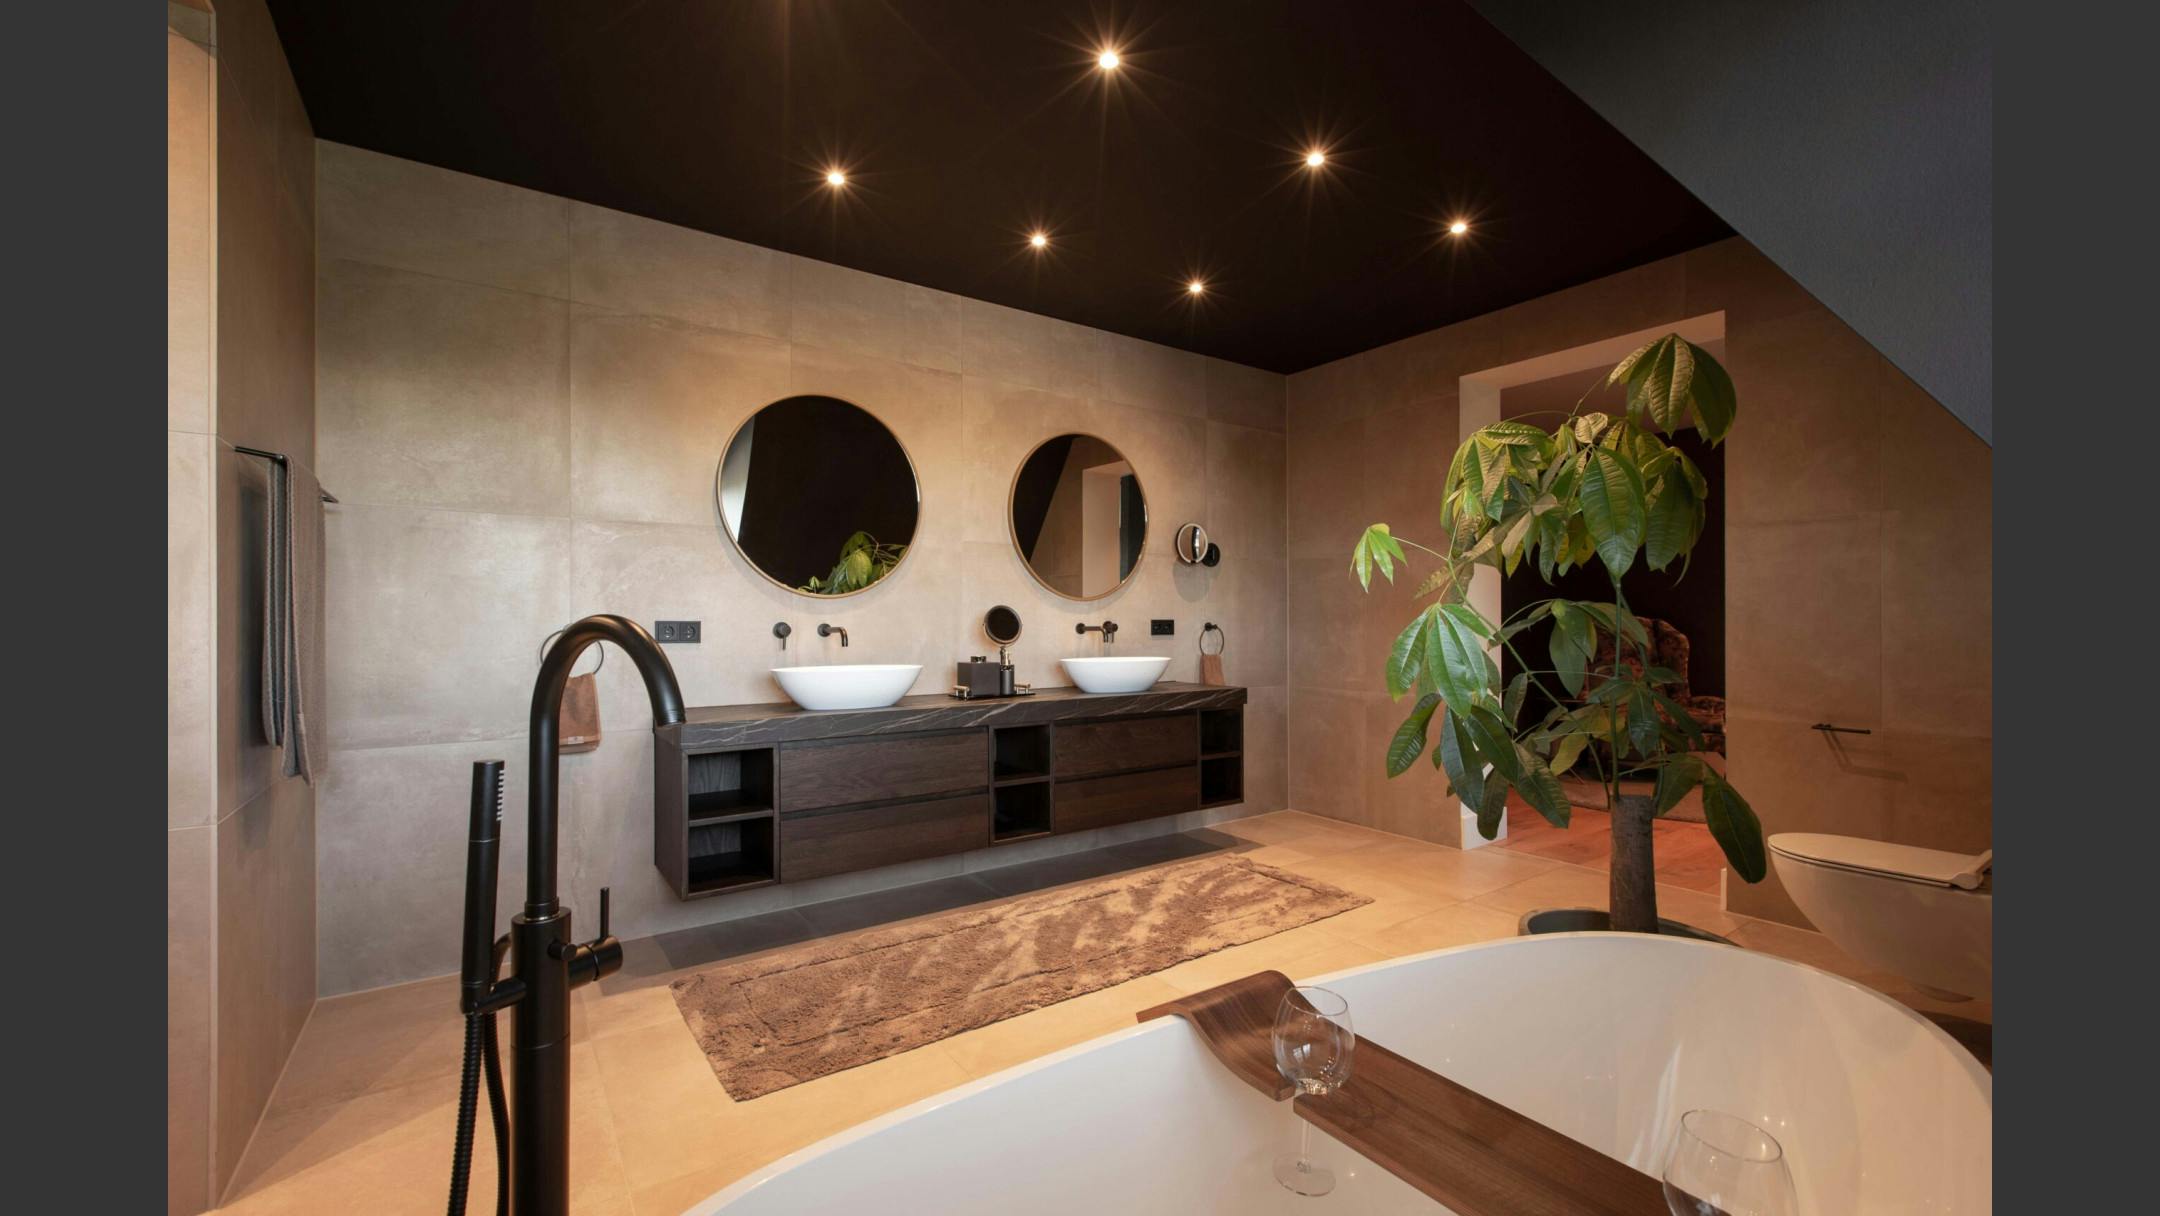 Badkamer met natuurlijke kleuren, twee wastafels en een plant naast het bad.